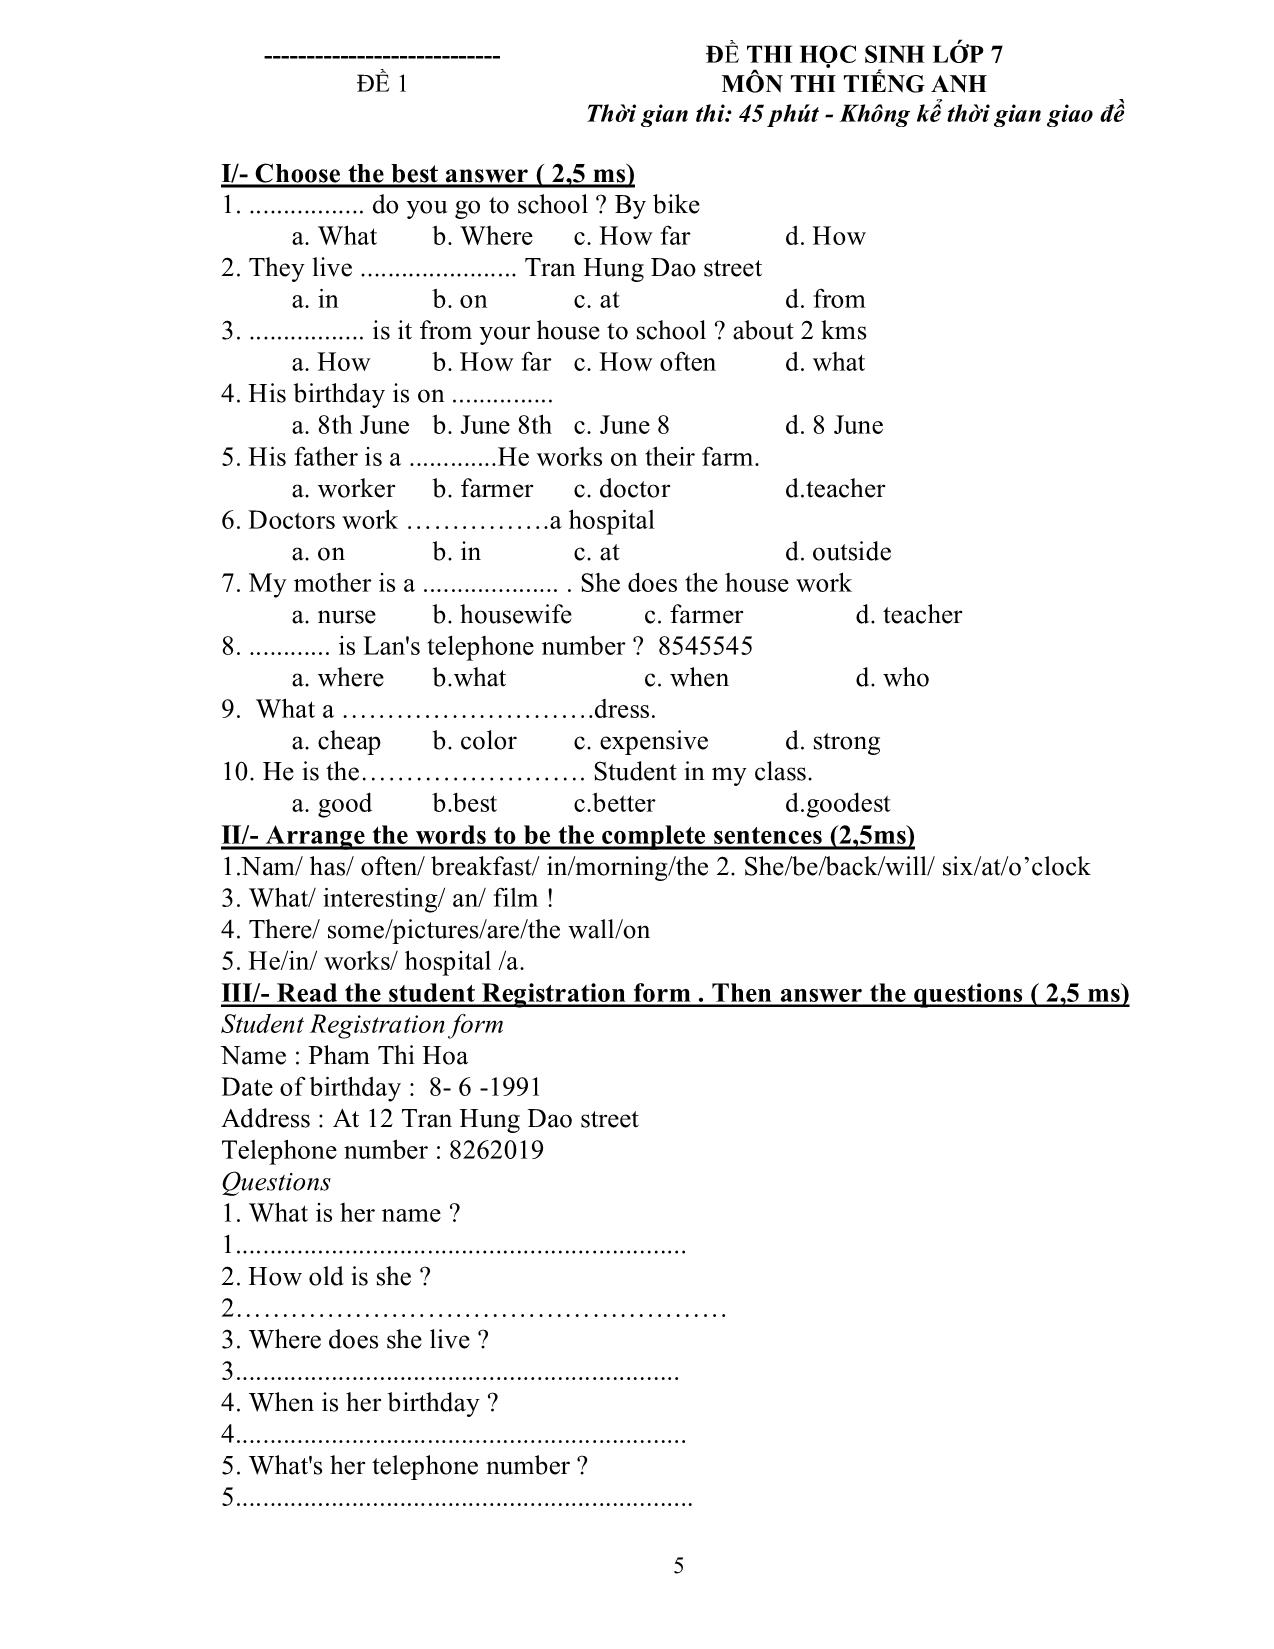 Bài kiểm tra 15 phút số 3 môn tiếng Anh - Lớp 7 trang 9